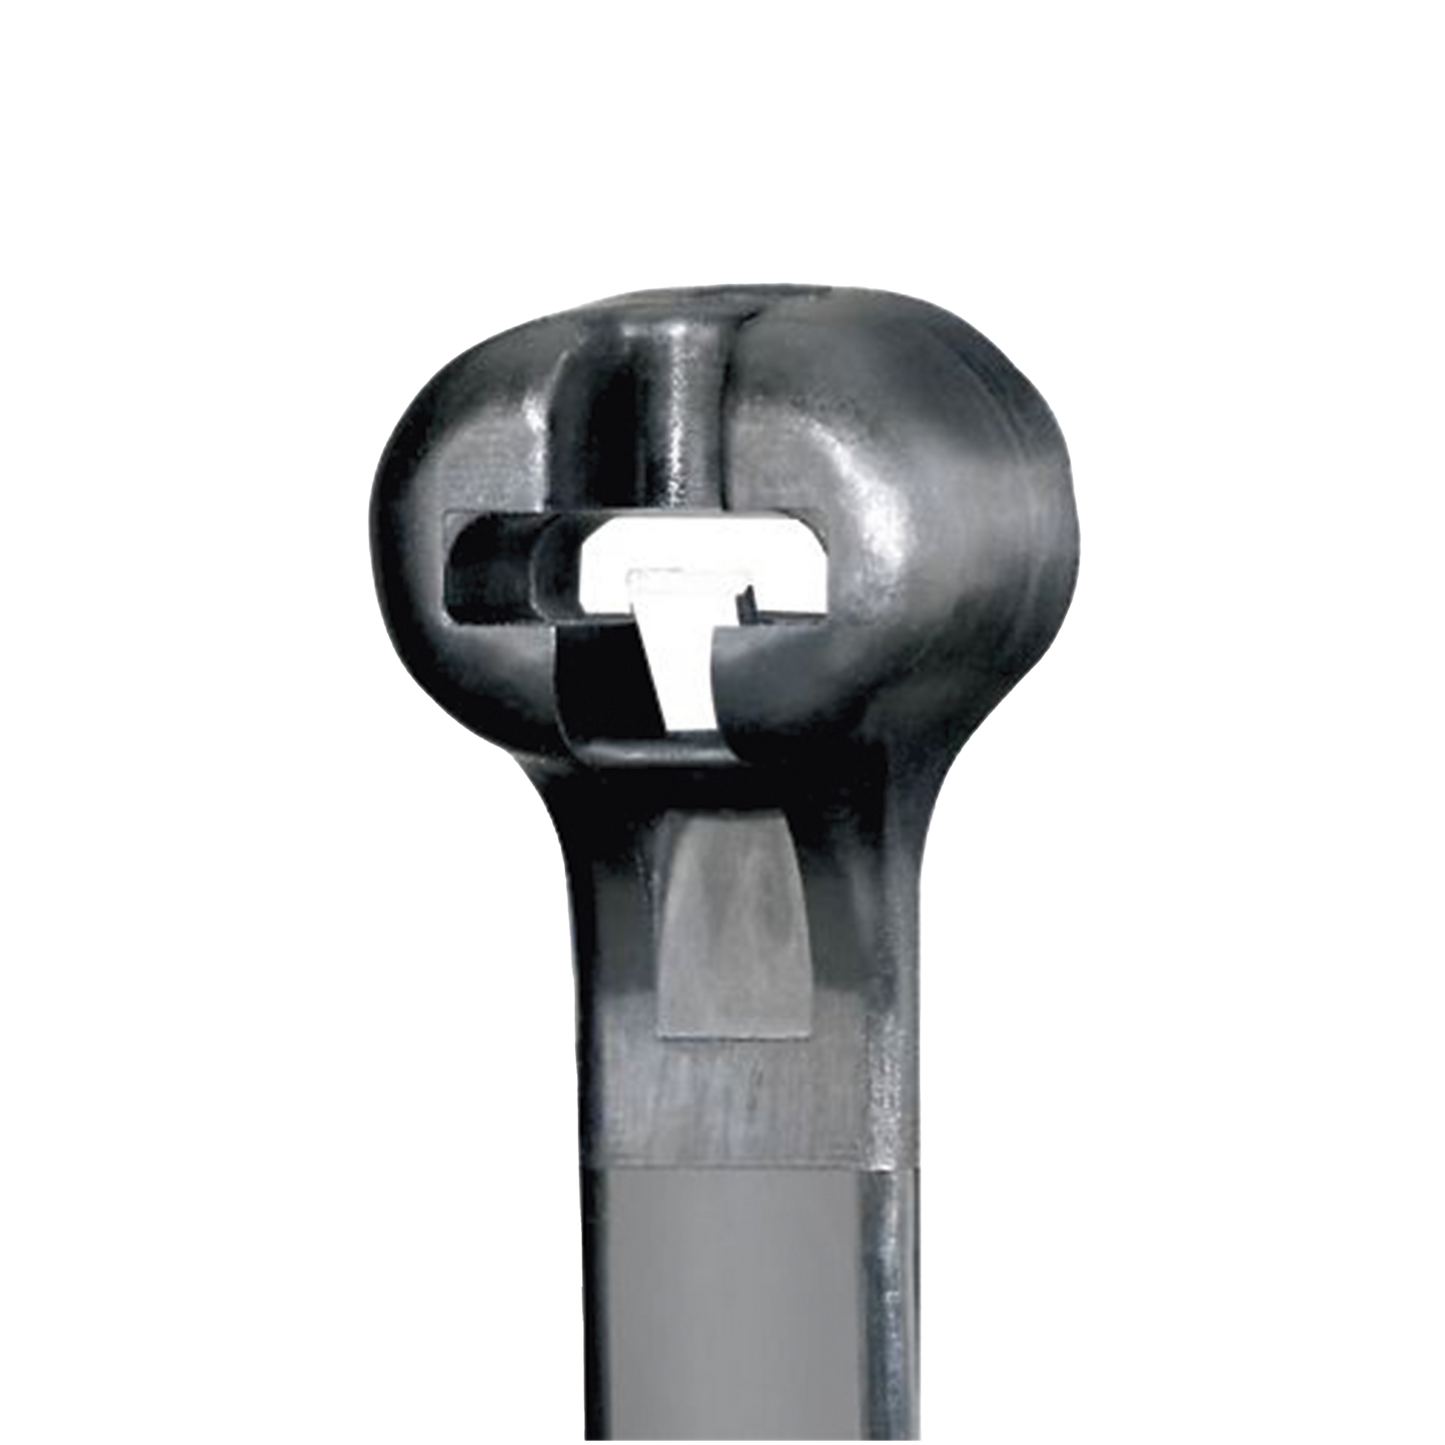 Cincho de Nylon 6.6 Dome-Top®, Con Lengüeta de Bloqueo de Acero Inoxidable, 305 mm largo x 4.7mm ancho, Color Negro, Exterior Resistente a Rayos UV, Paquete de 1000pz